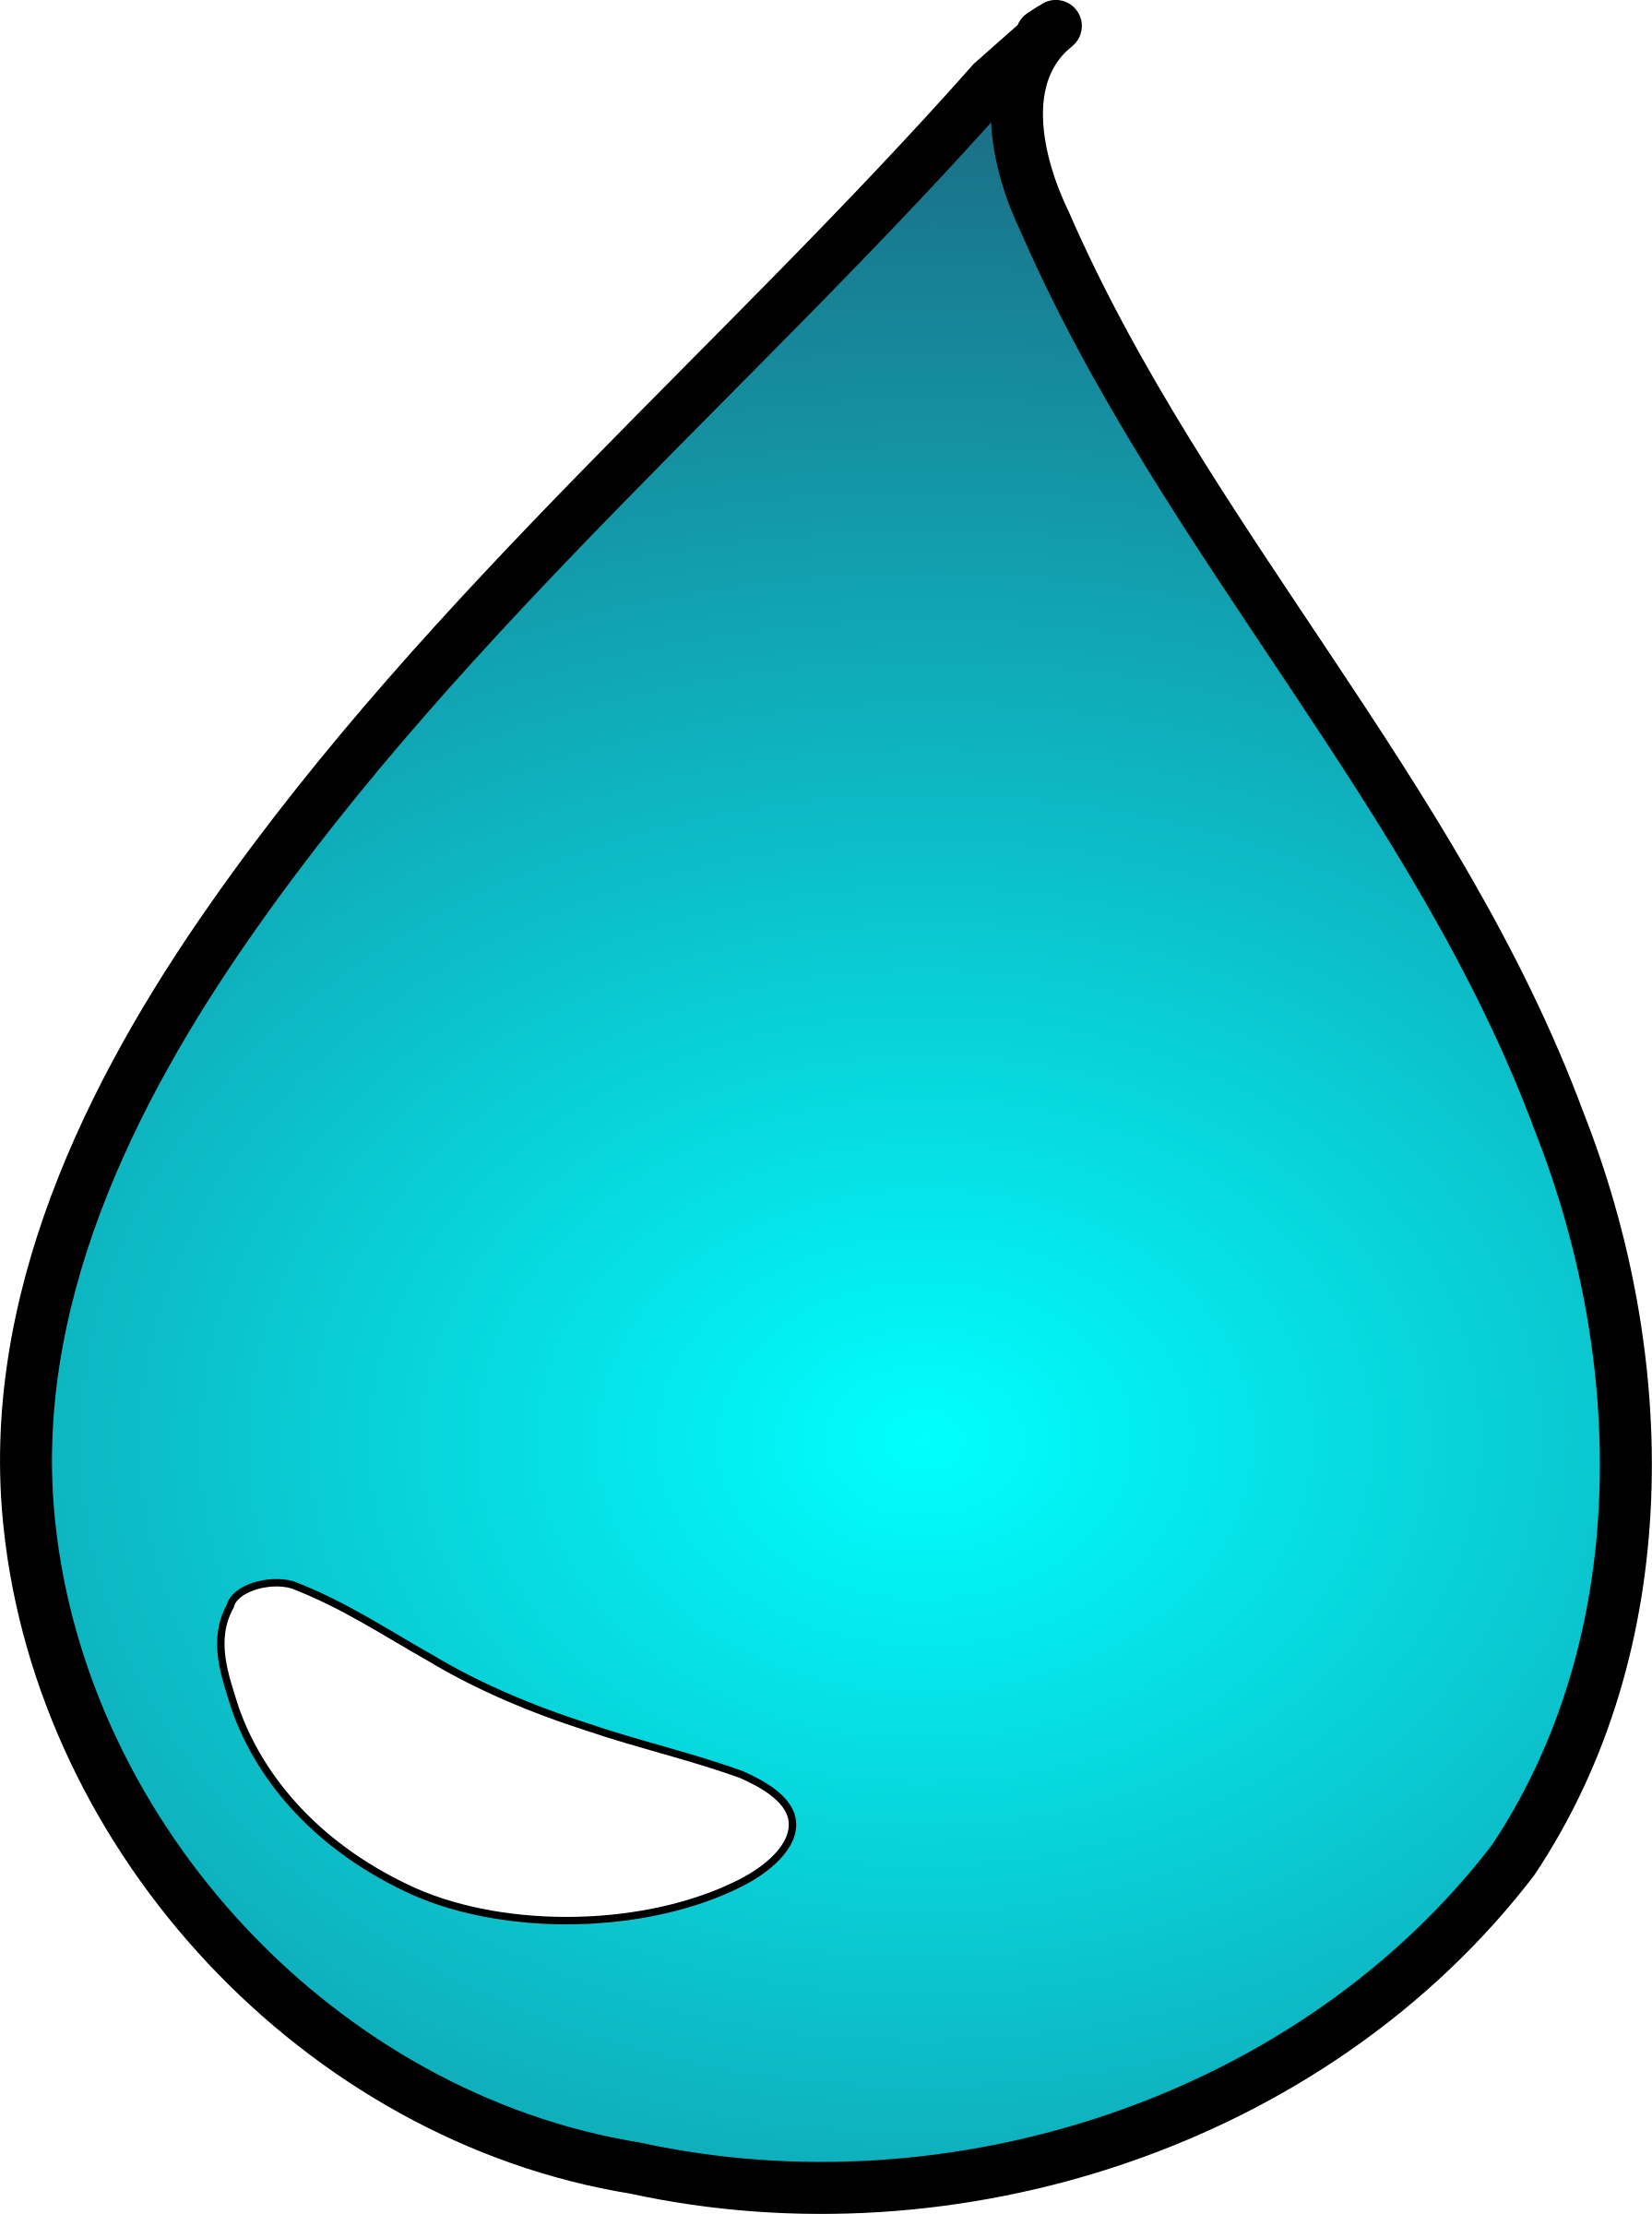 Drop jokingart com. Water clipart water droplet